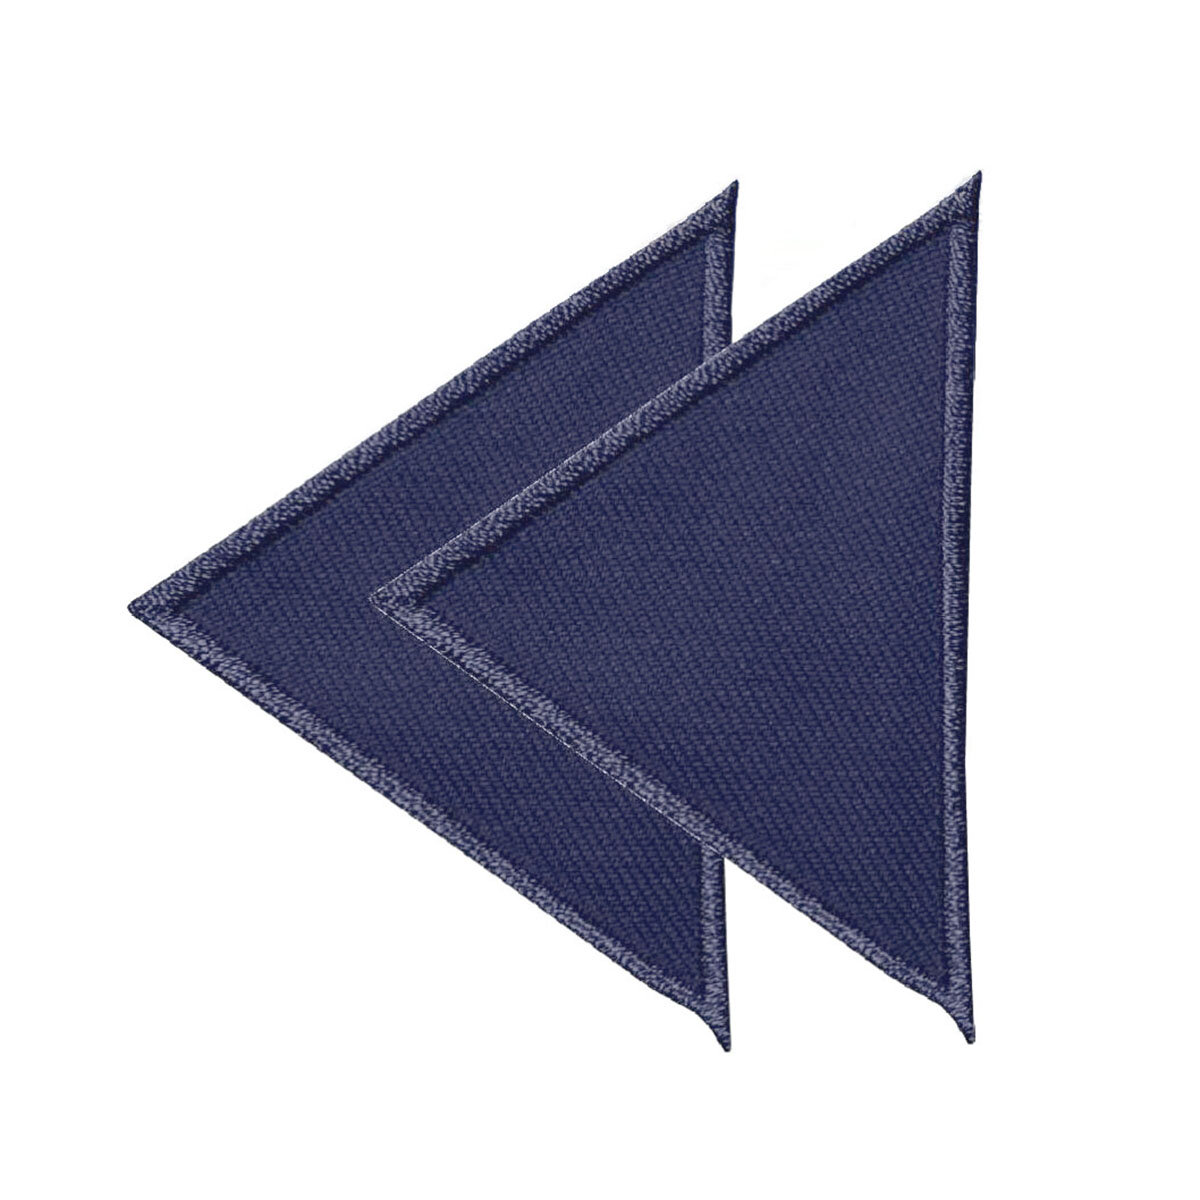 925472 Аппликация Треугольники, большие, темно-синий цвет, Prym